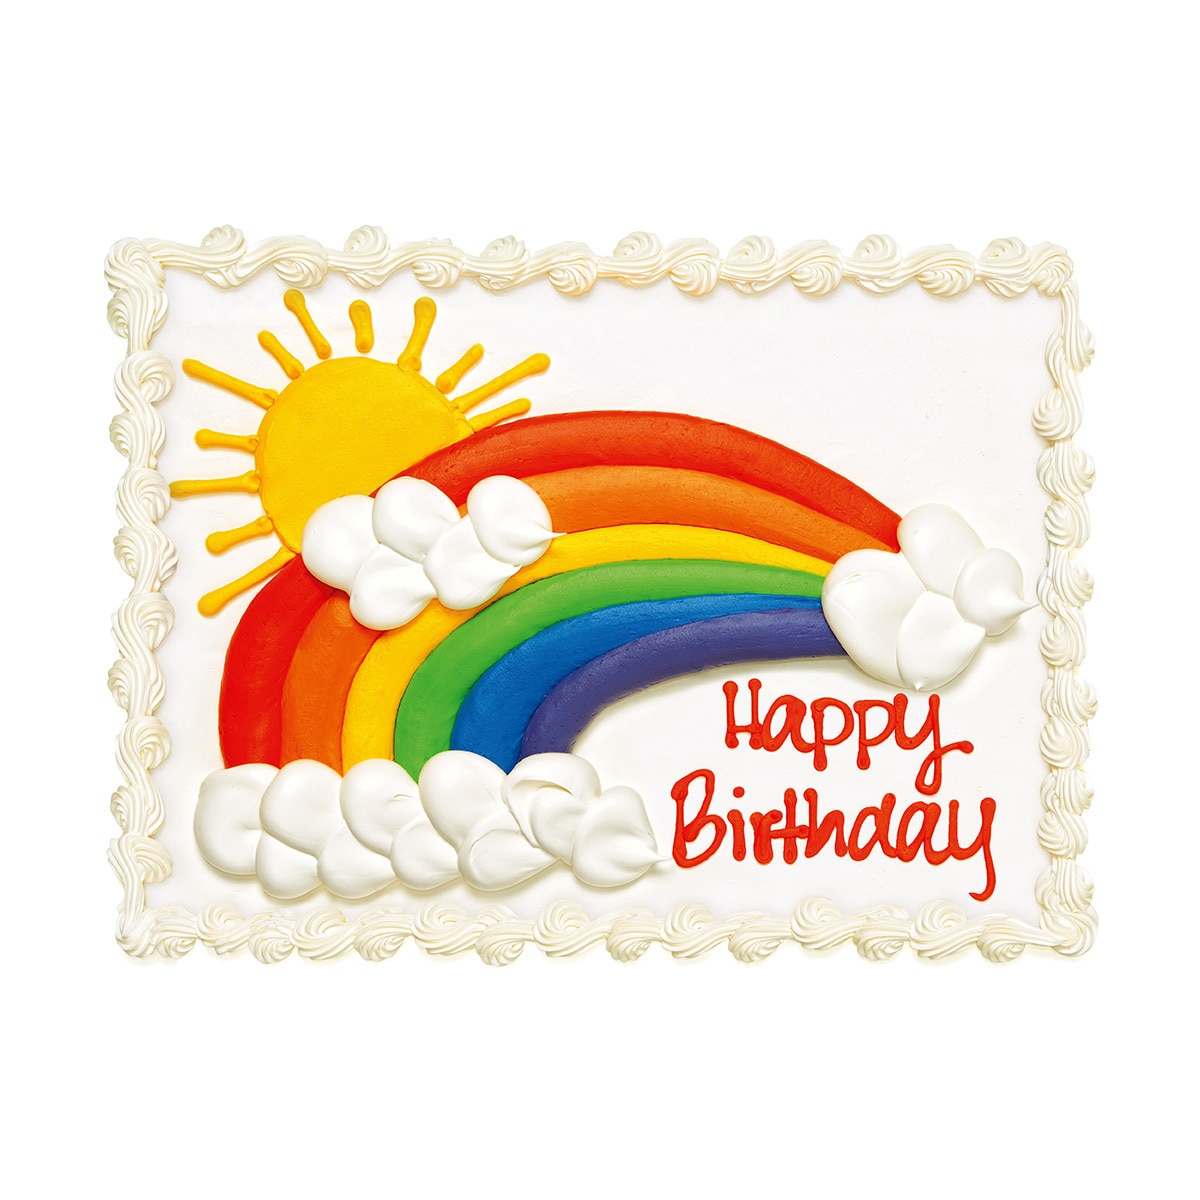 Costco Australia Rainbow Cake